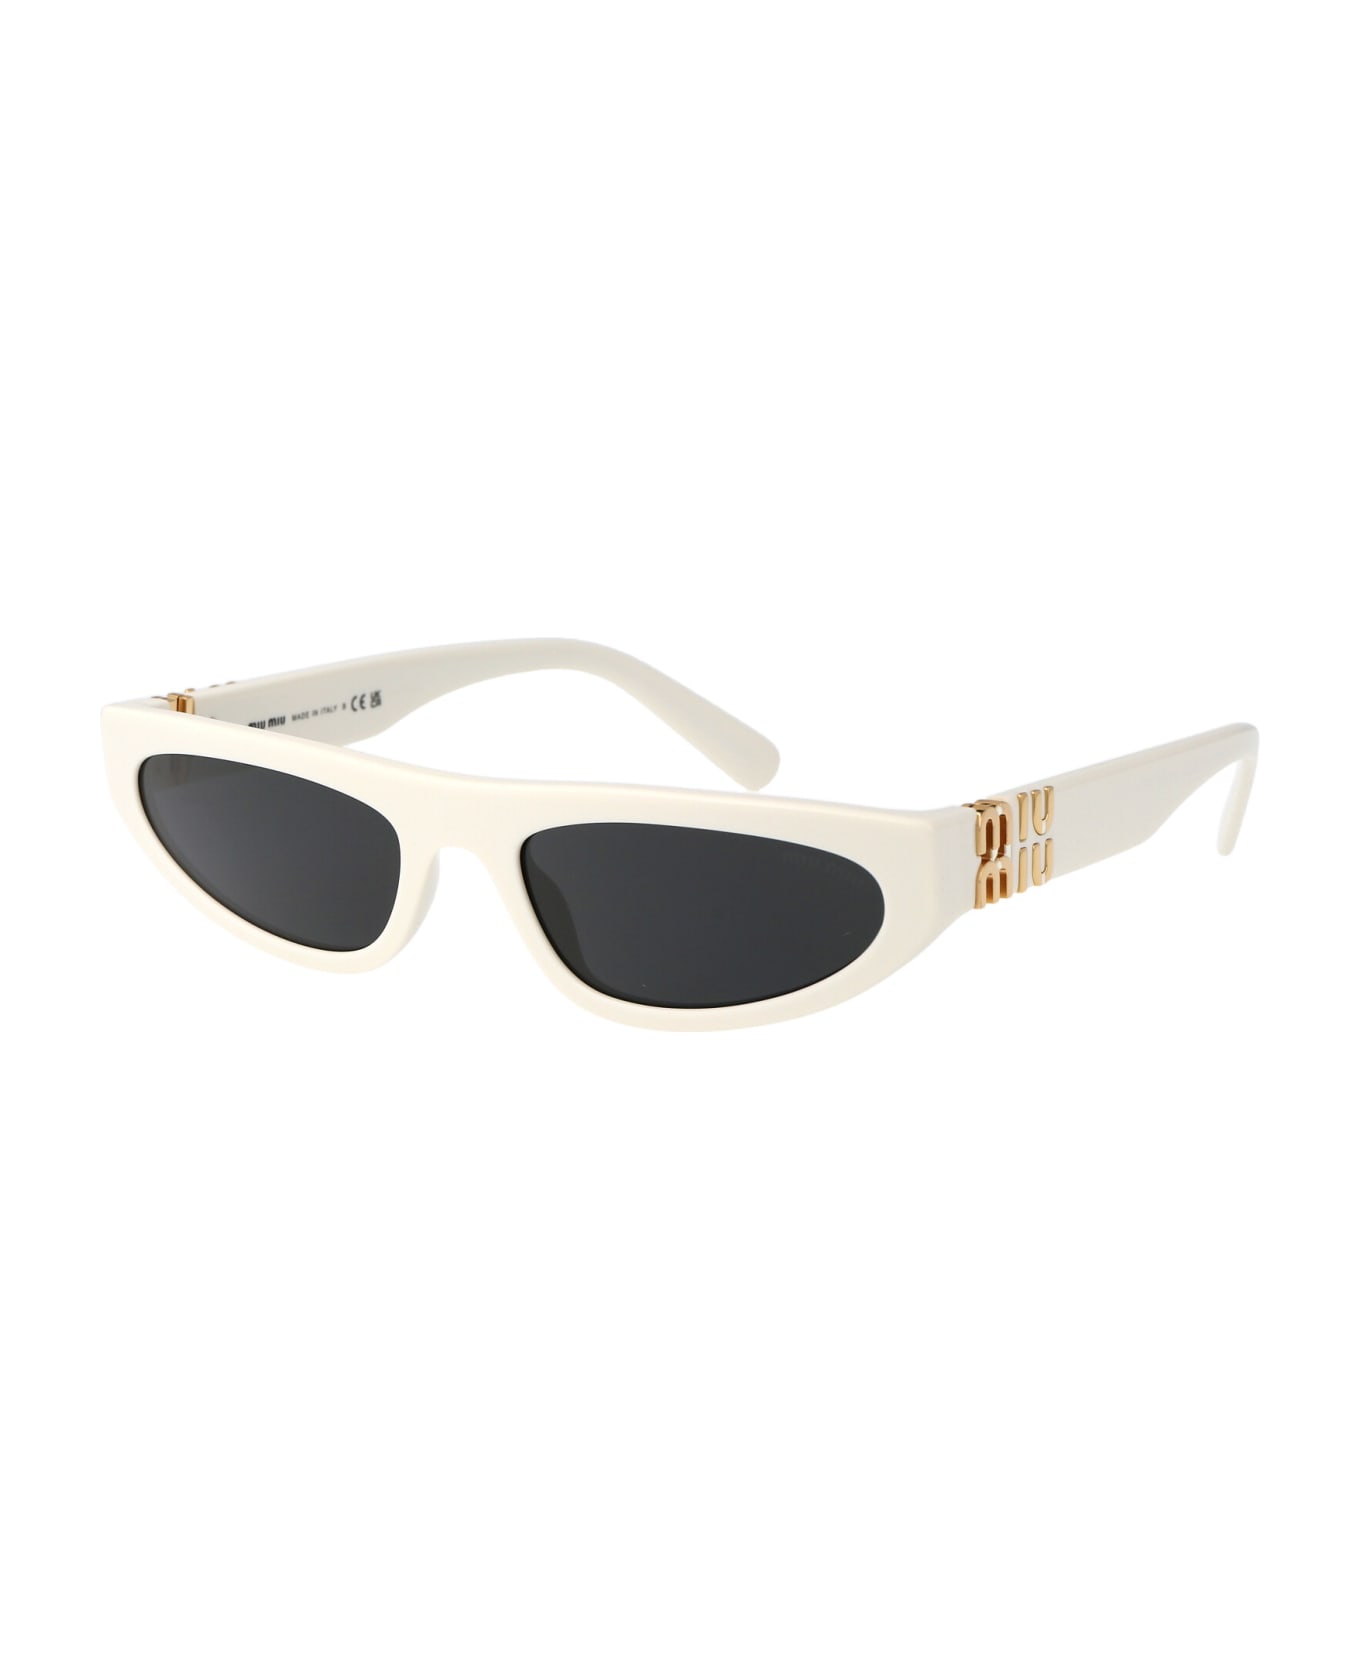 Miu Miu Eyewear 0mu 07zs Sunglasses - 1425S0 White Ivory